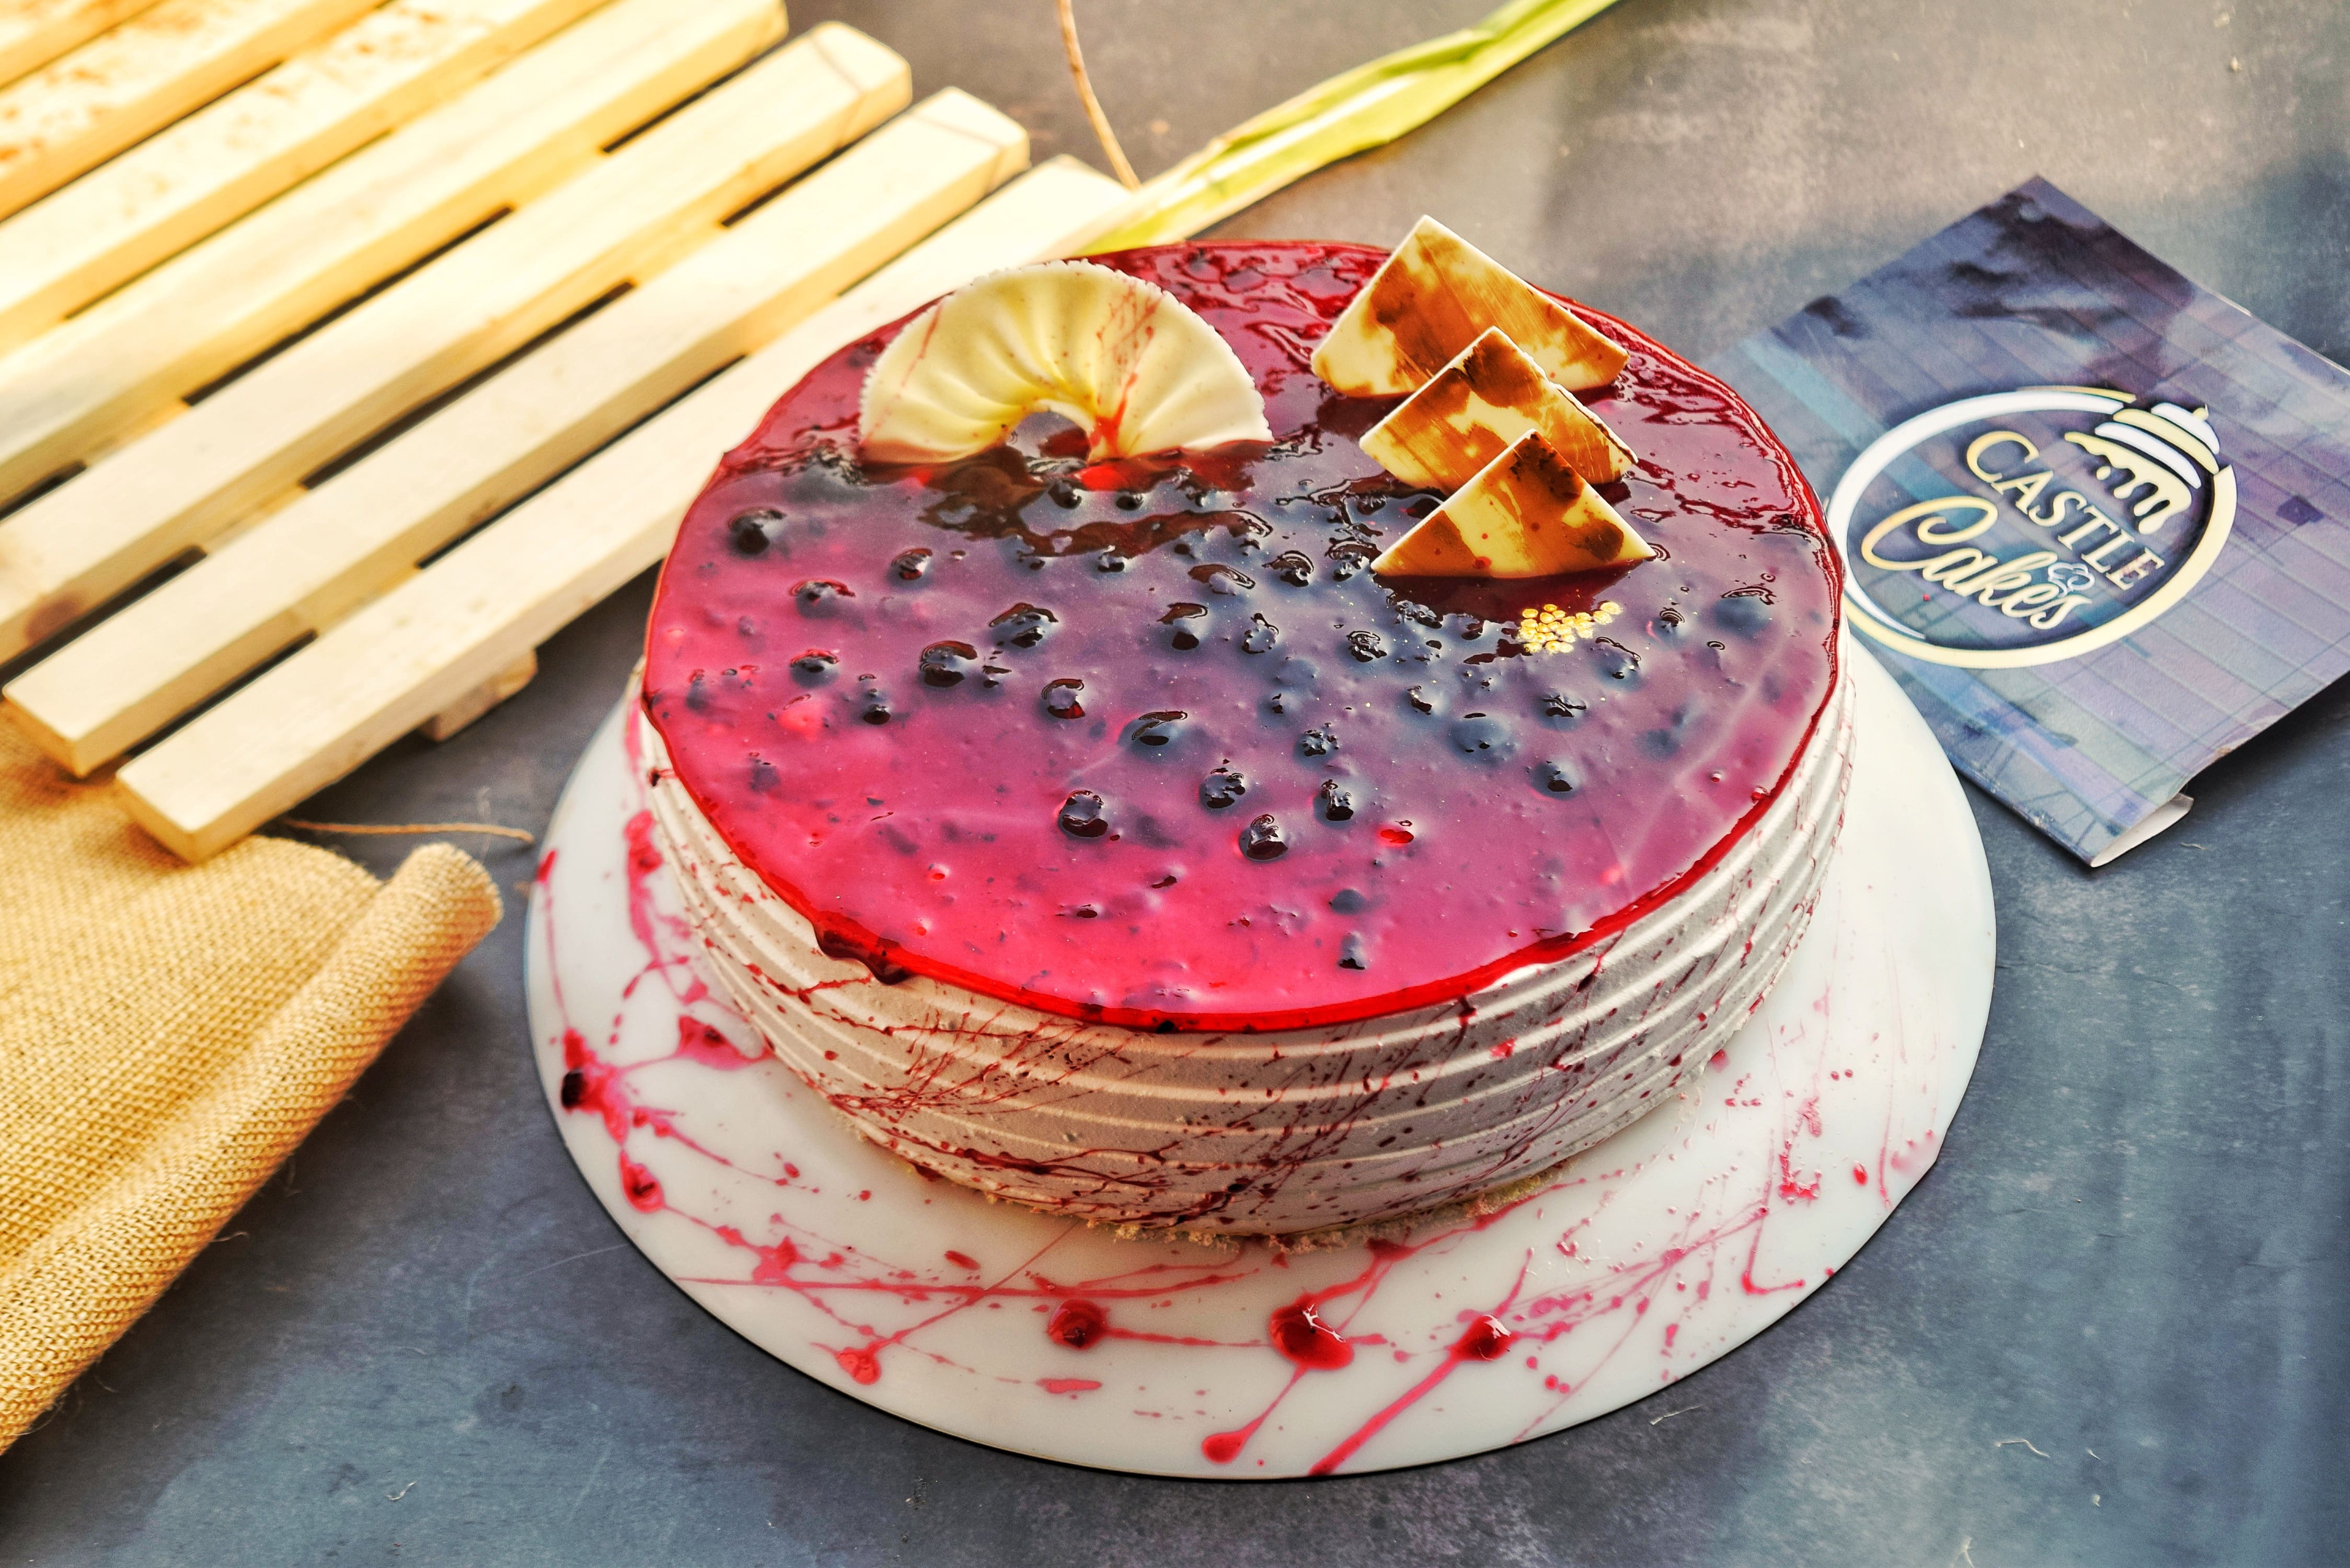 Yummy & Easy 3D Fondant Fruit Cake Recipes | Homemade Cake | Satisfying  Chocolate Cake Ideas - YouTube